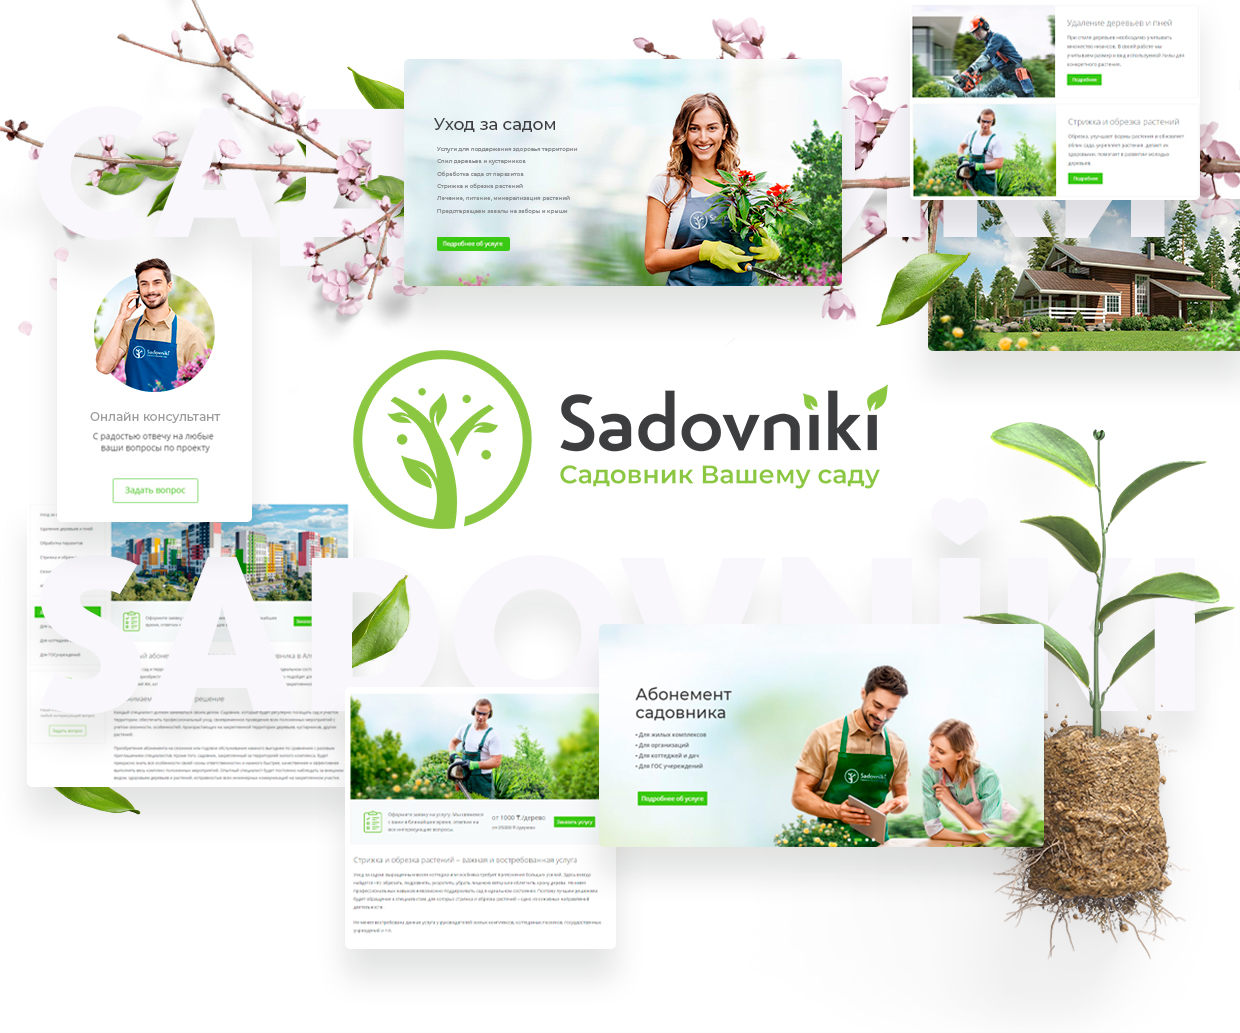 Sadovniki.kz Презентация сайта - Компания «Sadovniki.kz» — команда профессиональных арбористов, готовых к выполнению работ любой сложности.